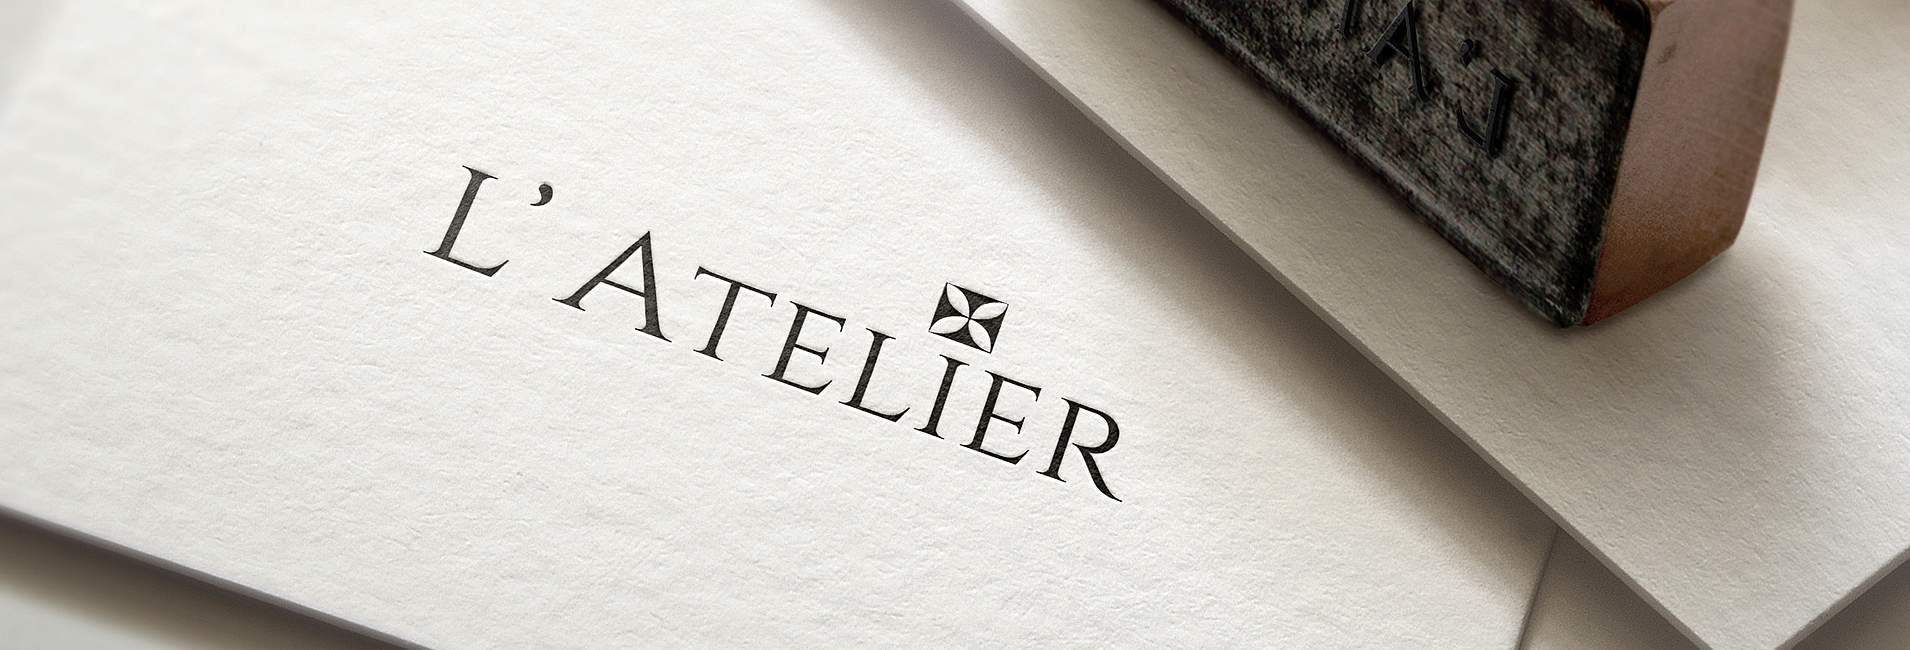 Ресторан L'Atelier - слайд3